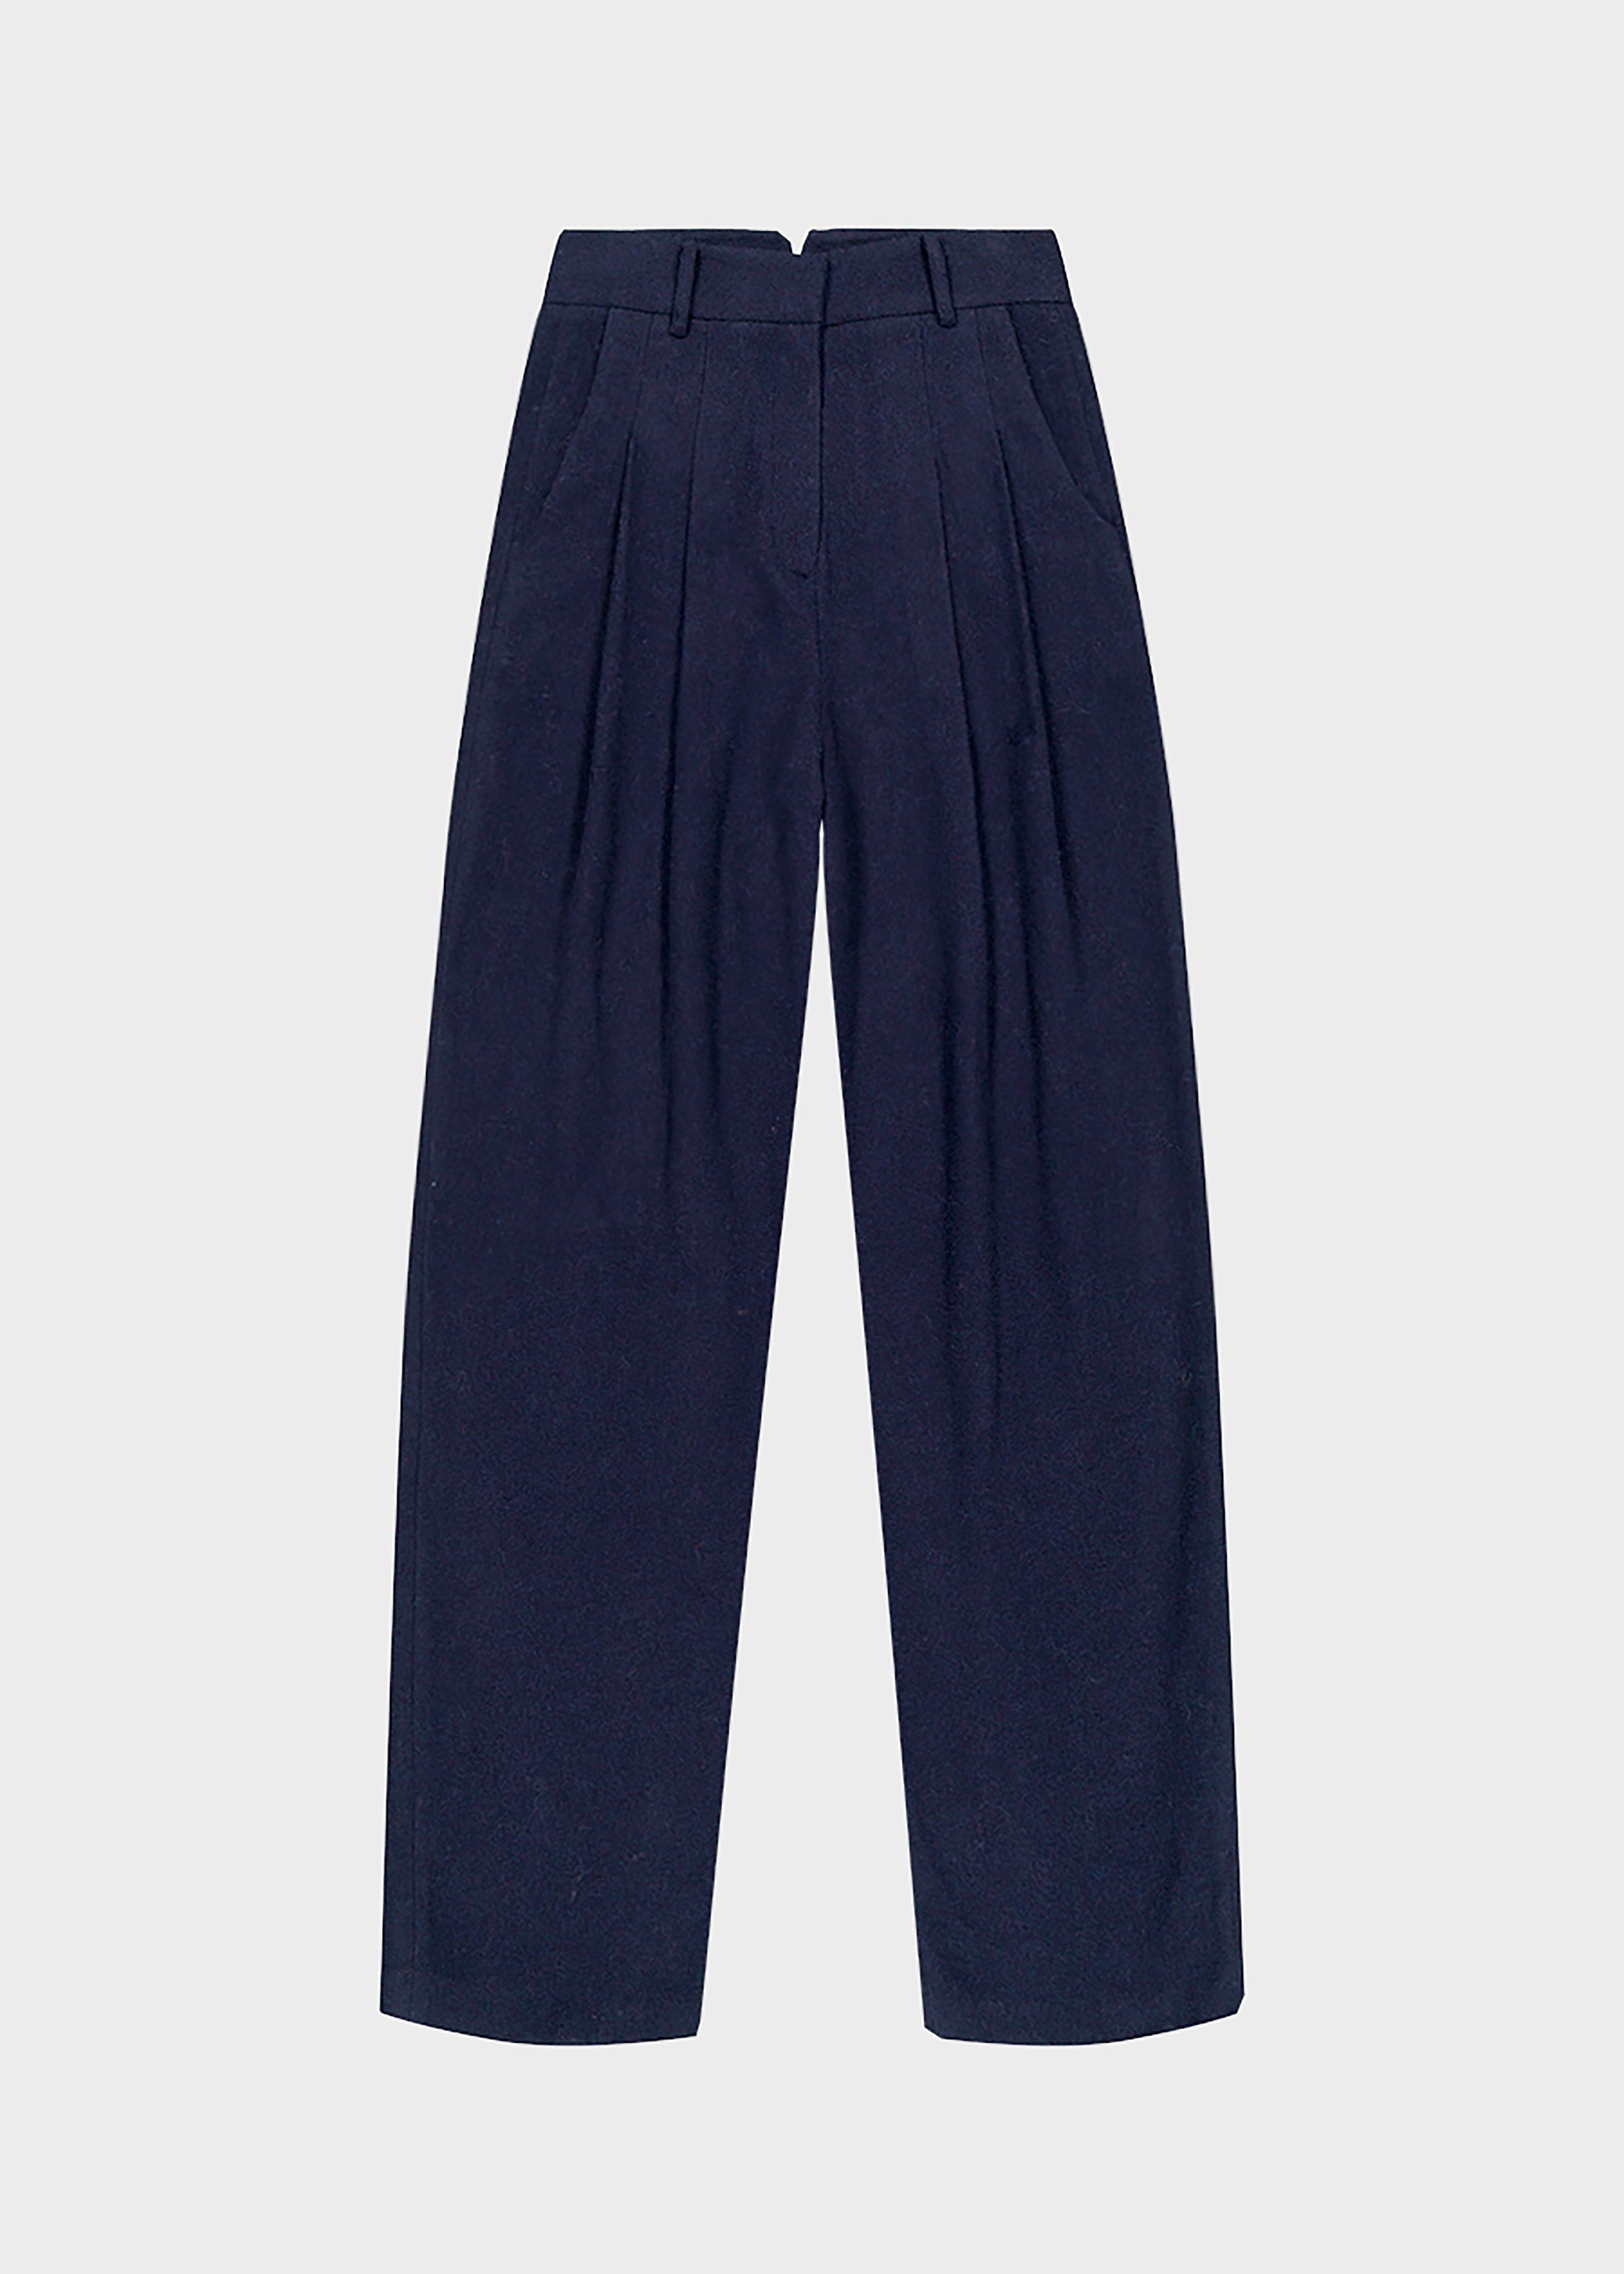 Layton Wool Suit Pants - Navy - 8